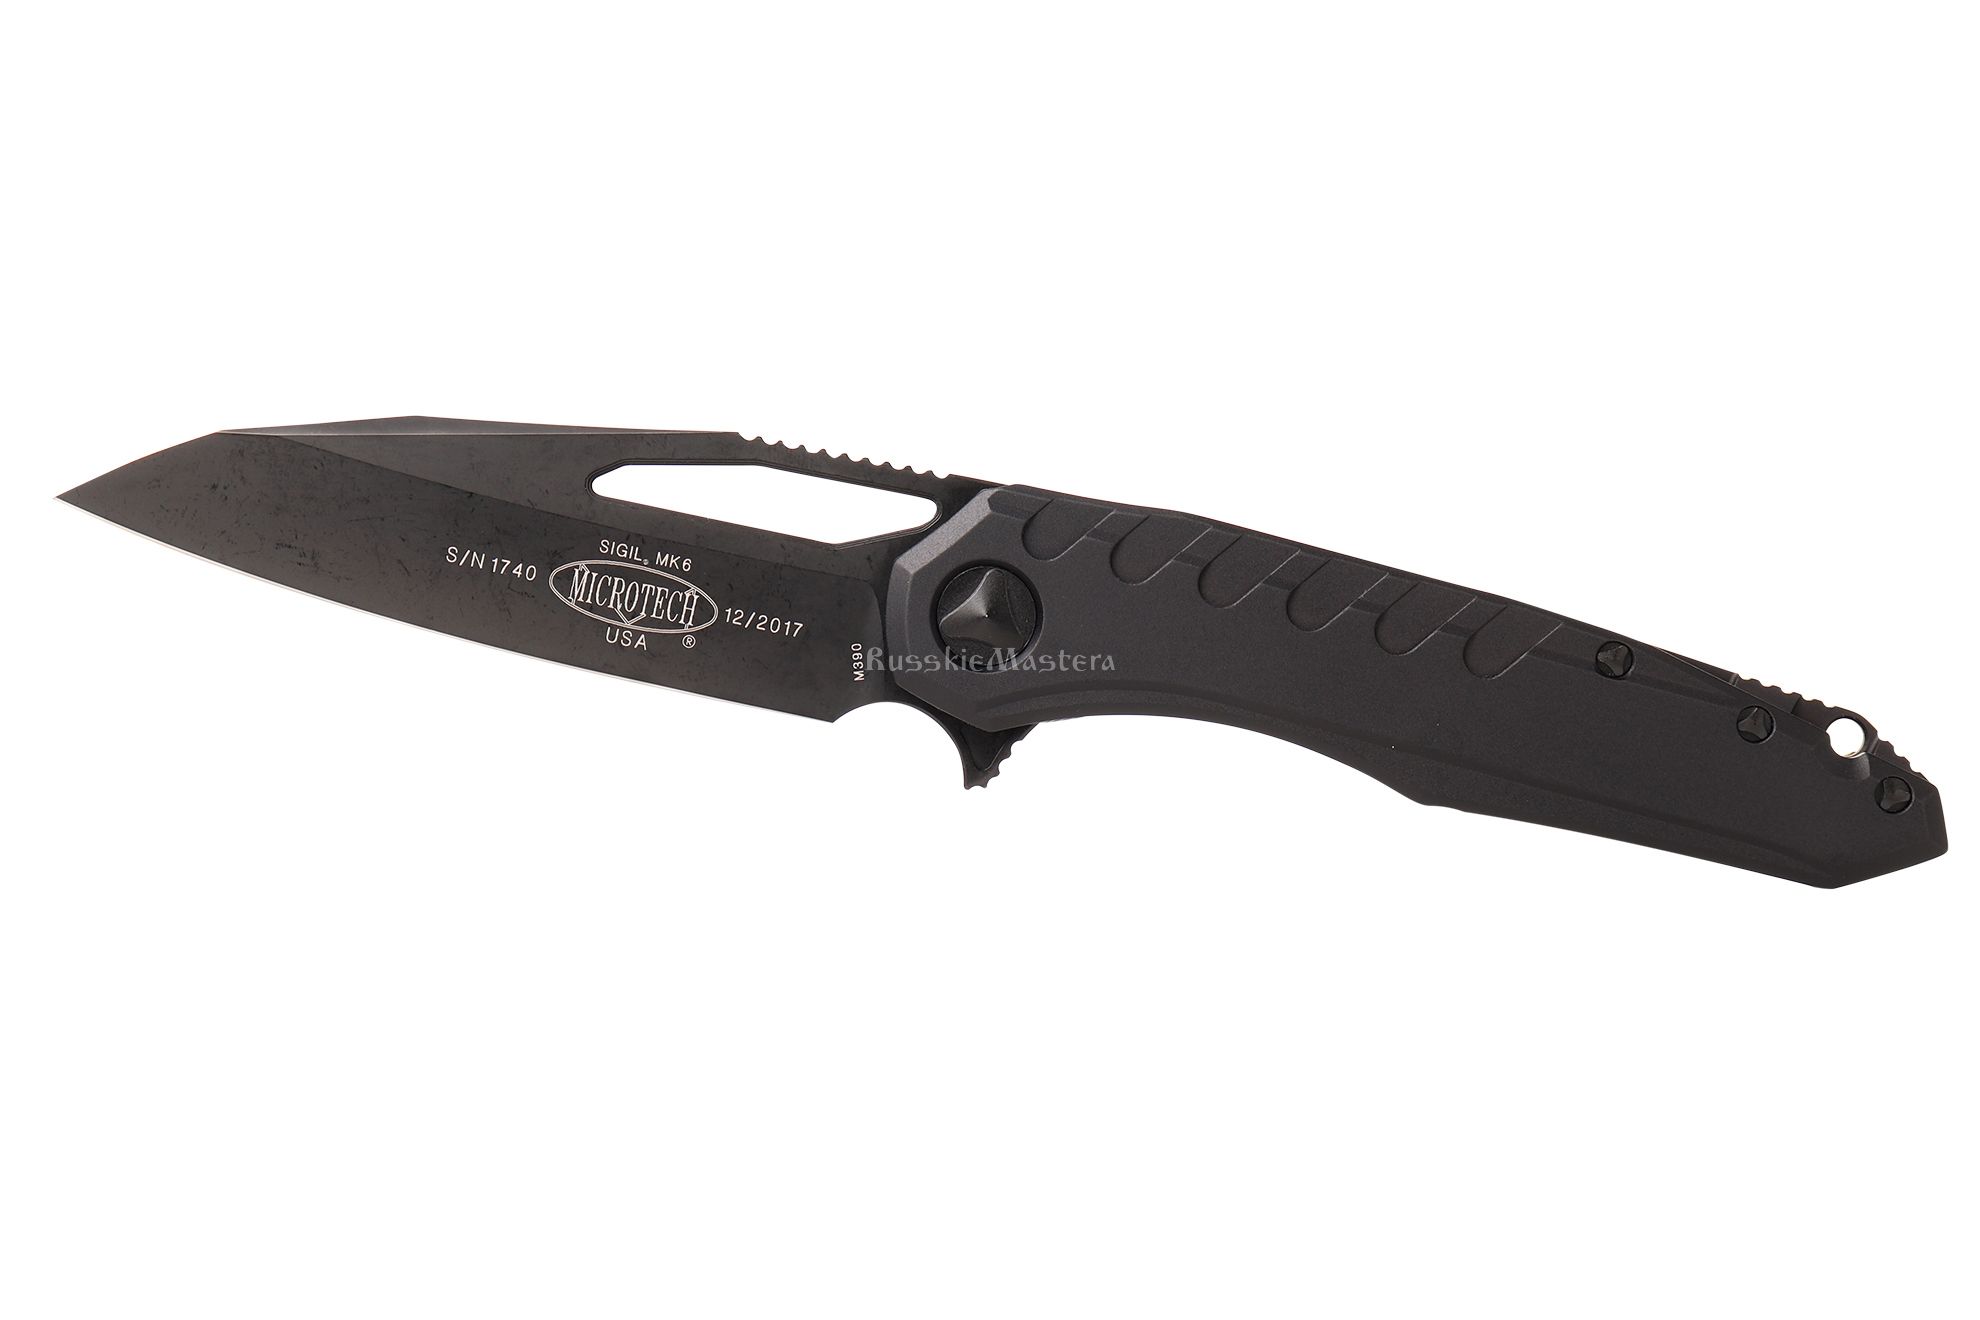 Купи коллекционный складной нож Sigil MK6 196-1 DLCT Microtech, Marfione / Munroe, порошковая сталь М390.